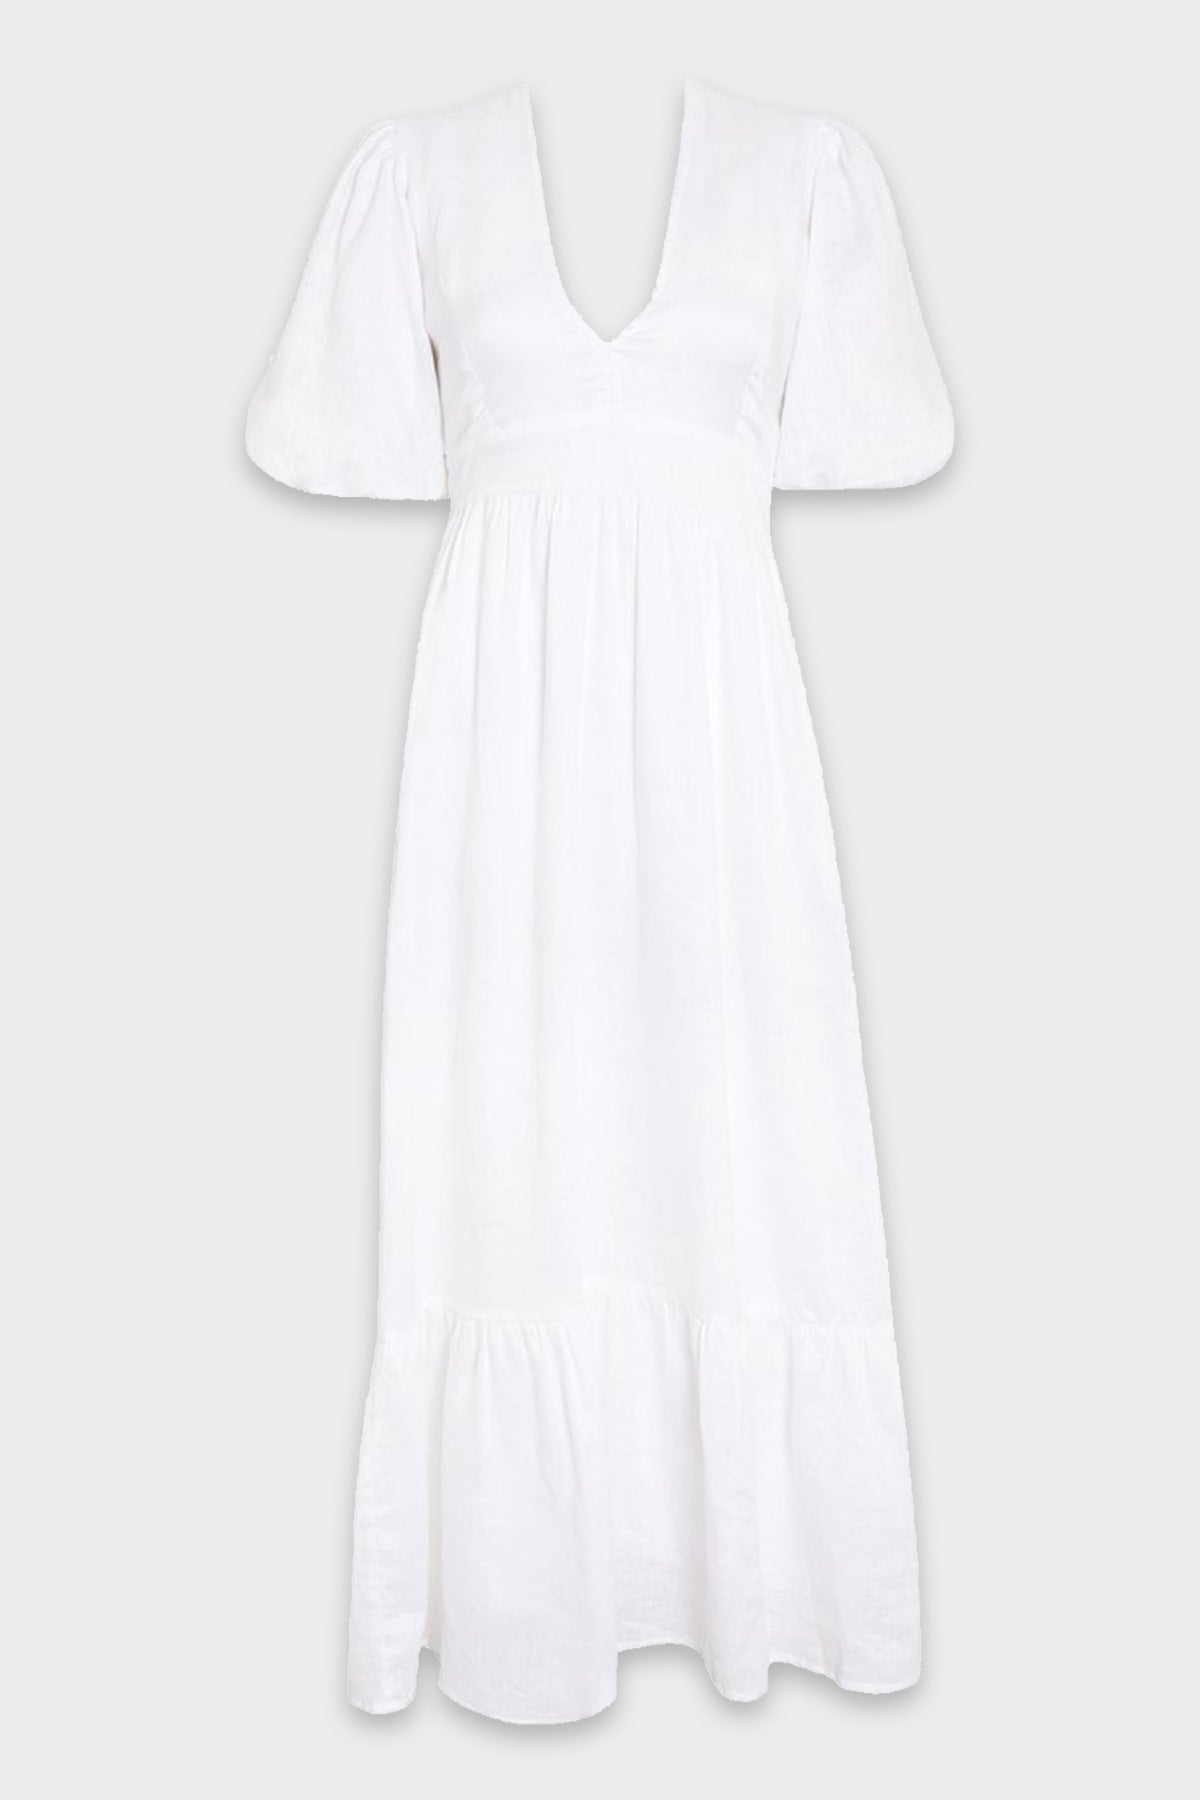 Romilla Midi Dress in Plain White - shop-olivia.com